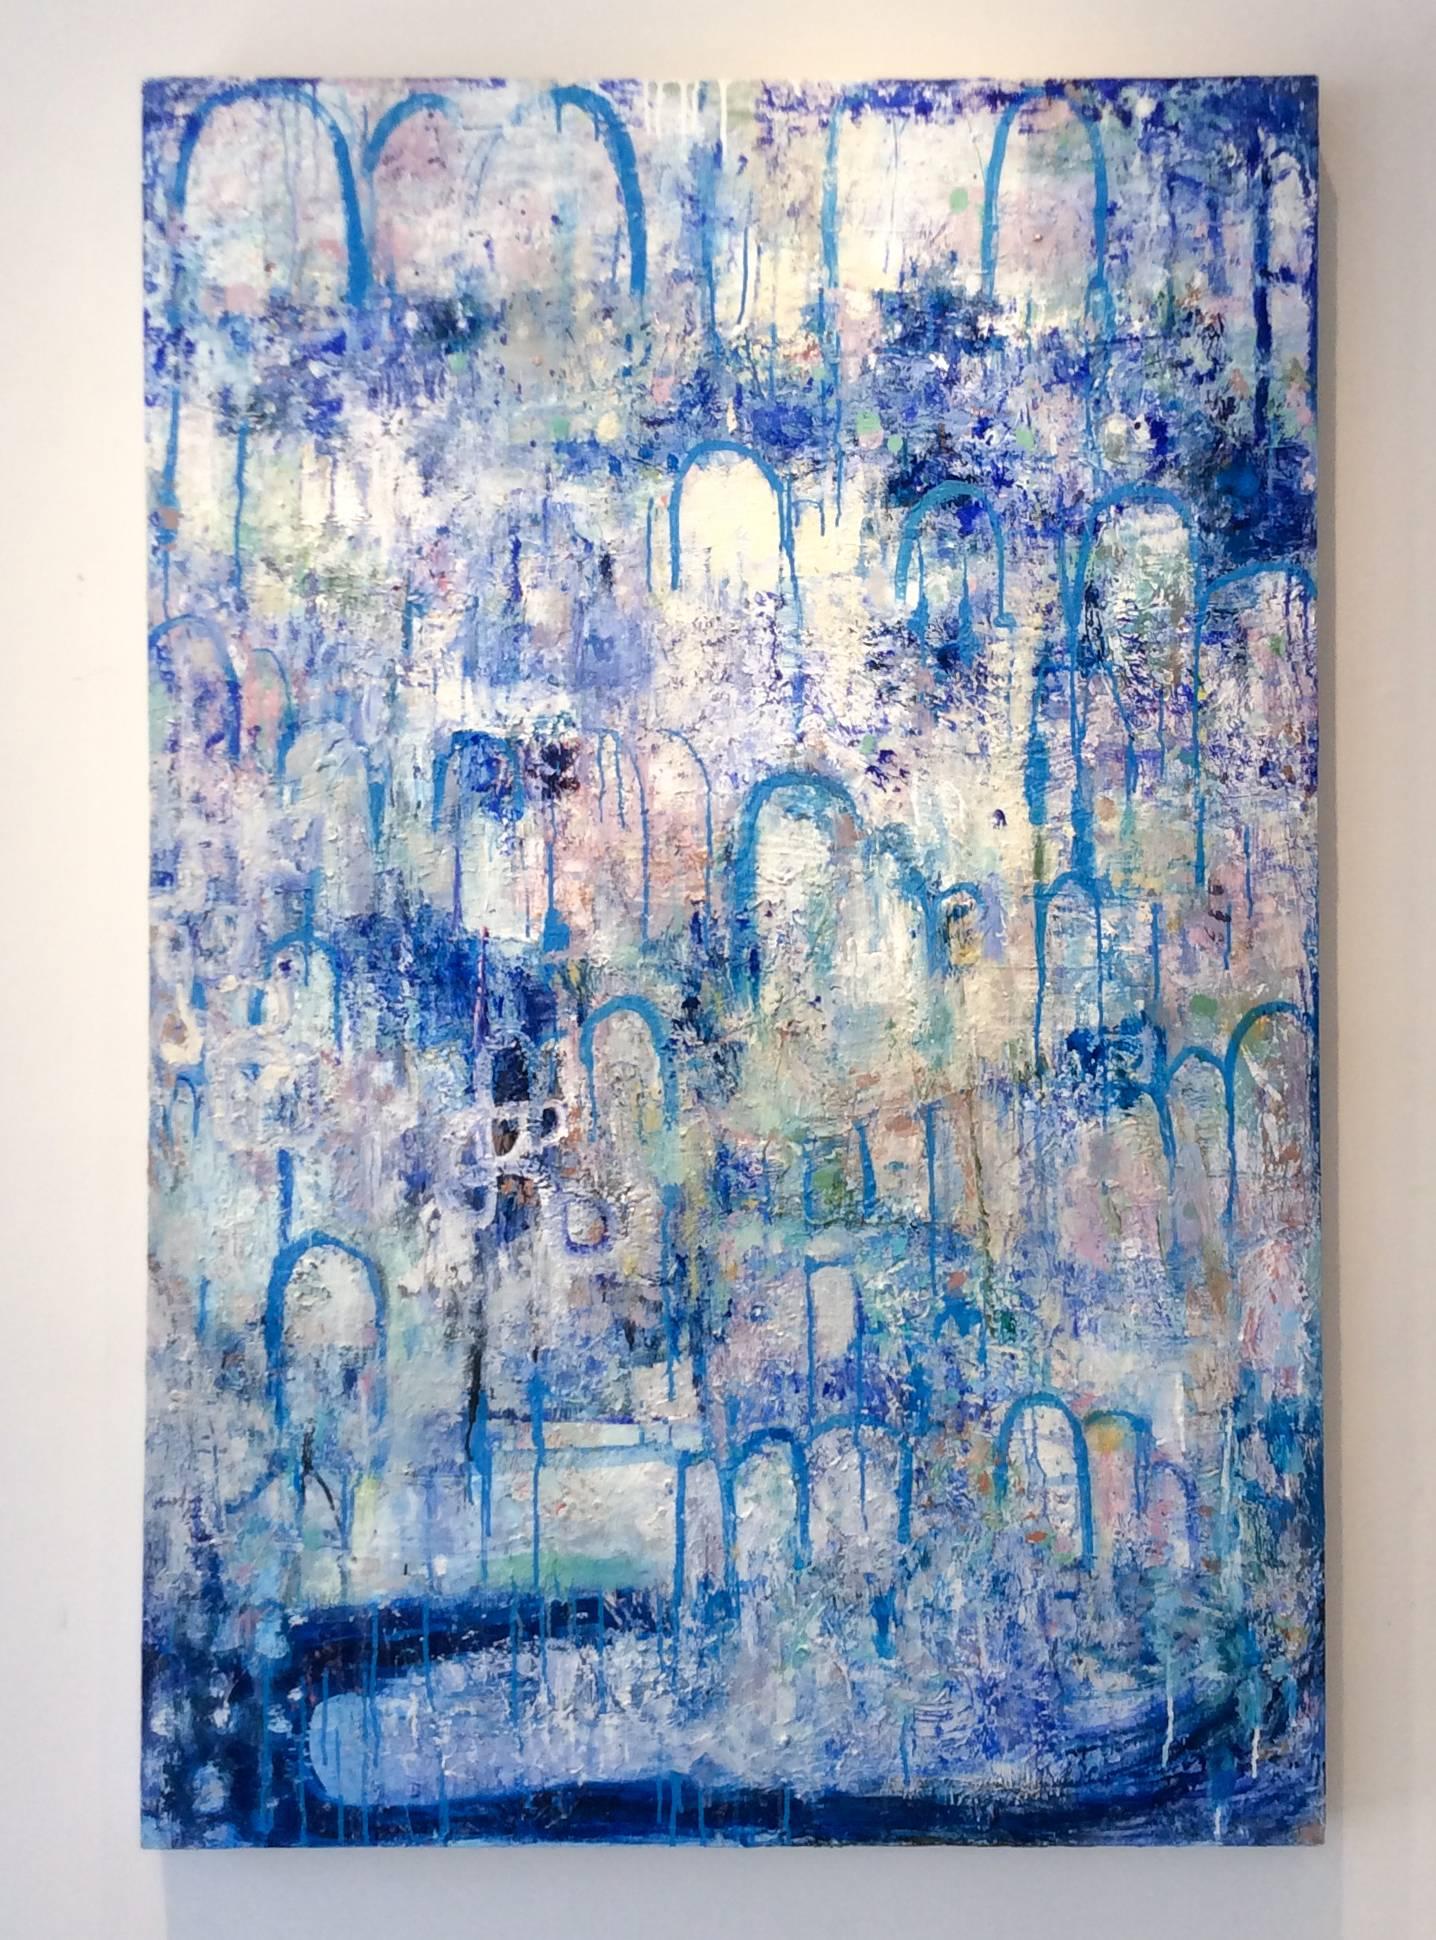 Hydrologie (zeitgenössisches vertikales abstraktes Expressionistisches Gemälde, Blau & Weiß) – Painting von Ragellah Rourke